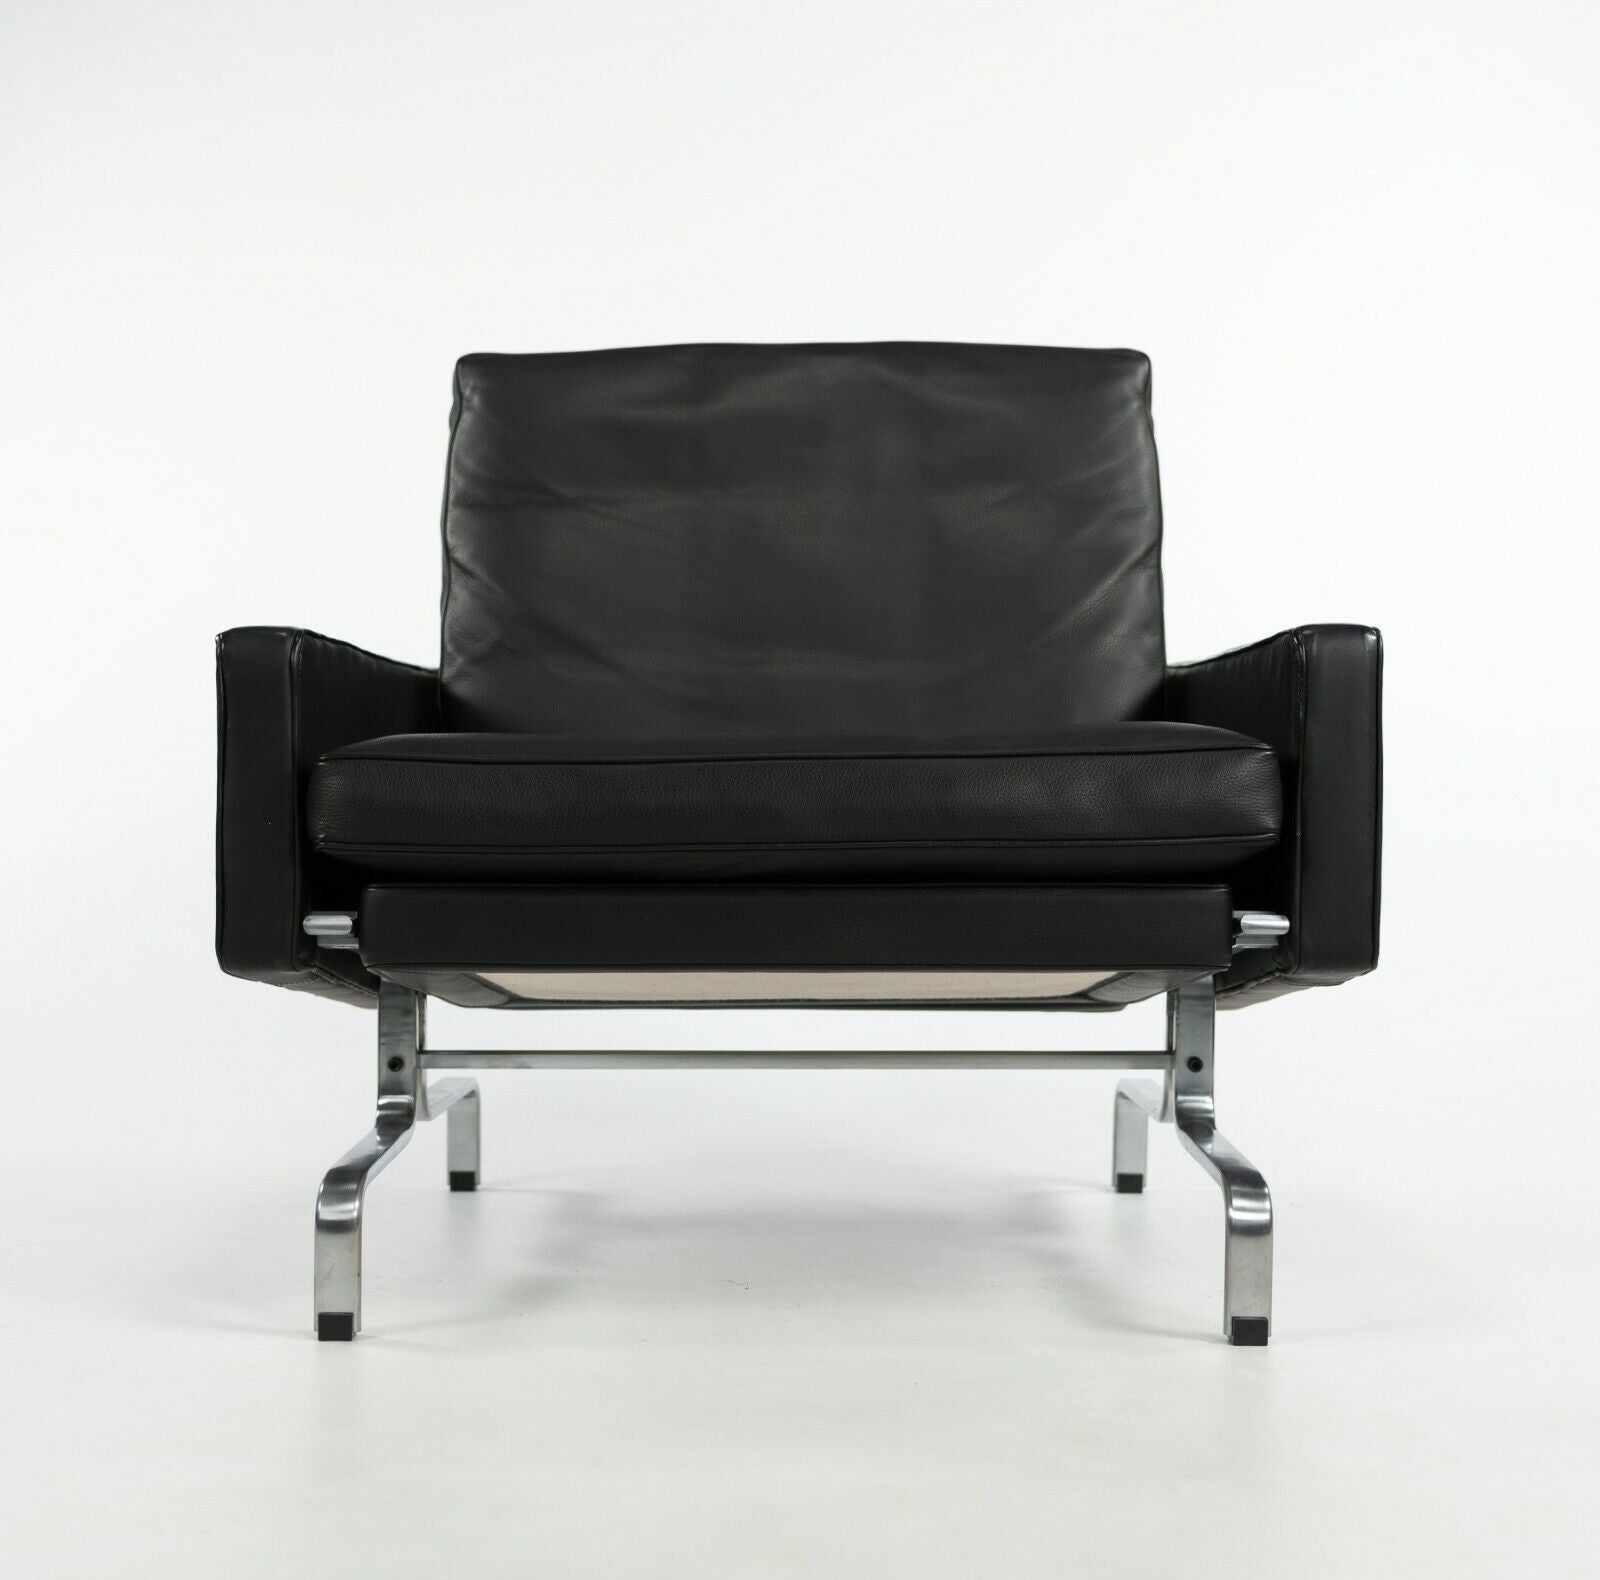 2010 Pair of Poul Kjaerholm for Fritz Hansen PK31 Easy Lounge Chair Black Leather